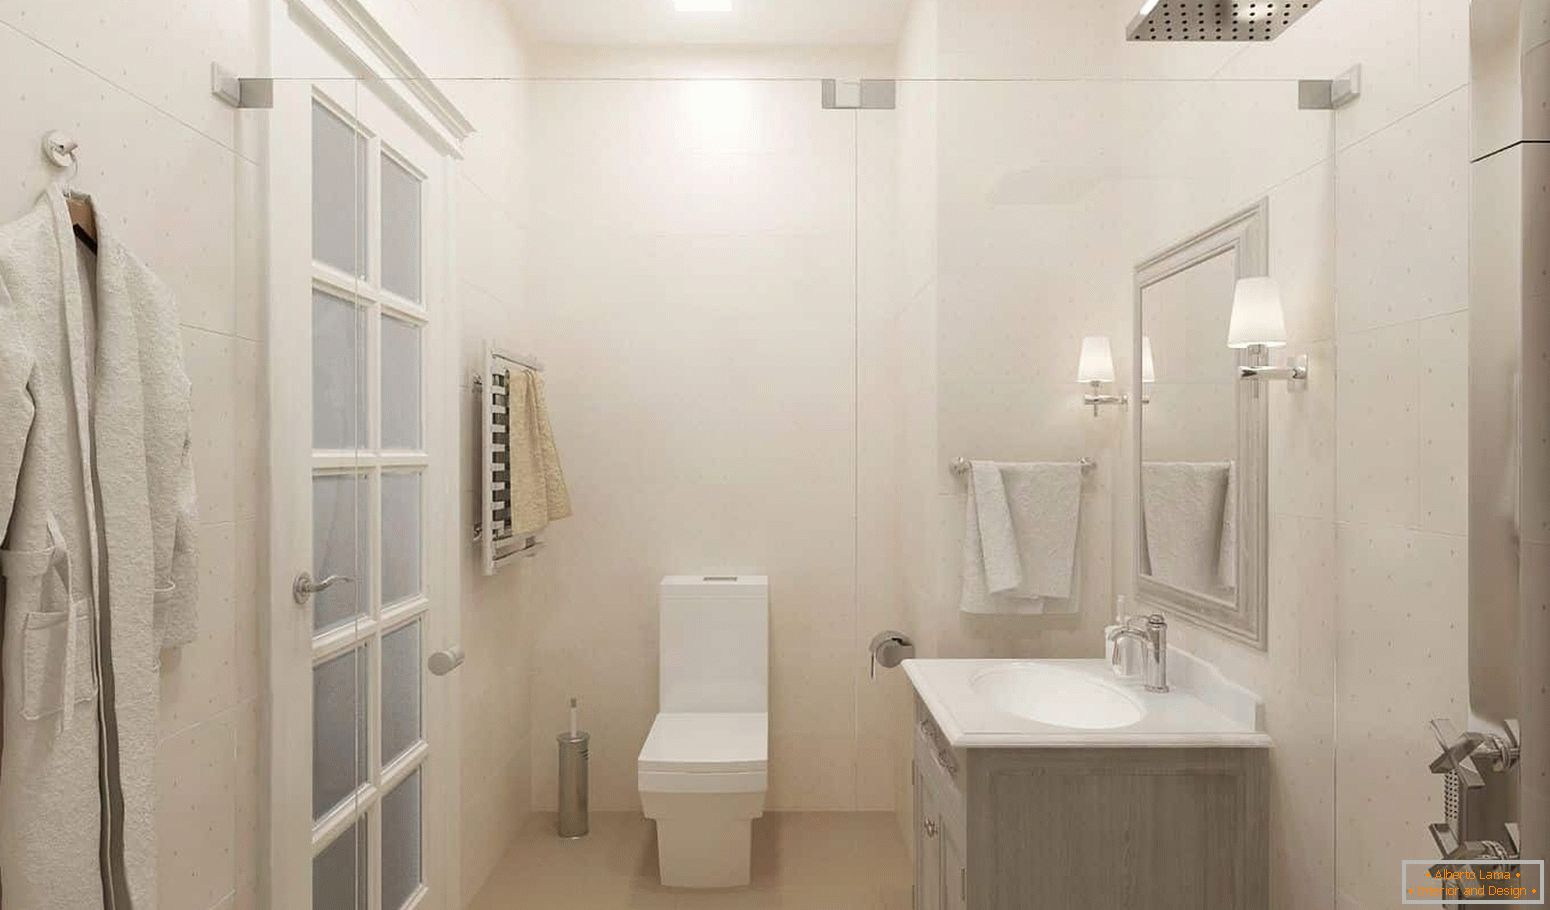 White bathroom in the interior